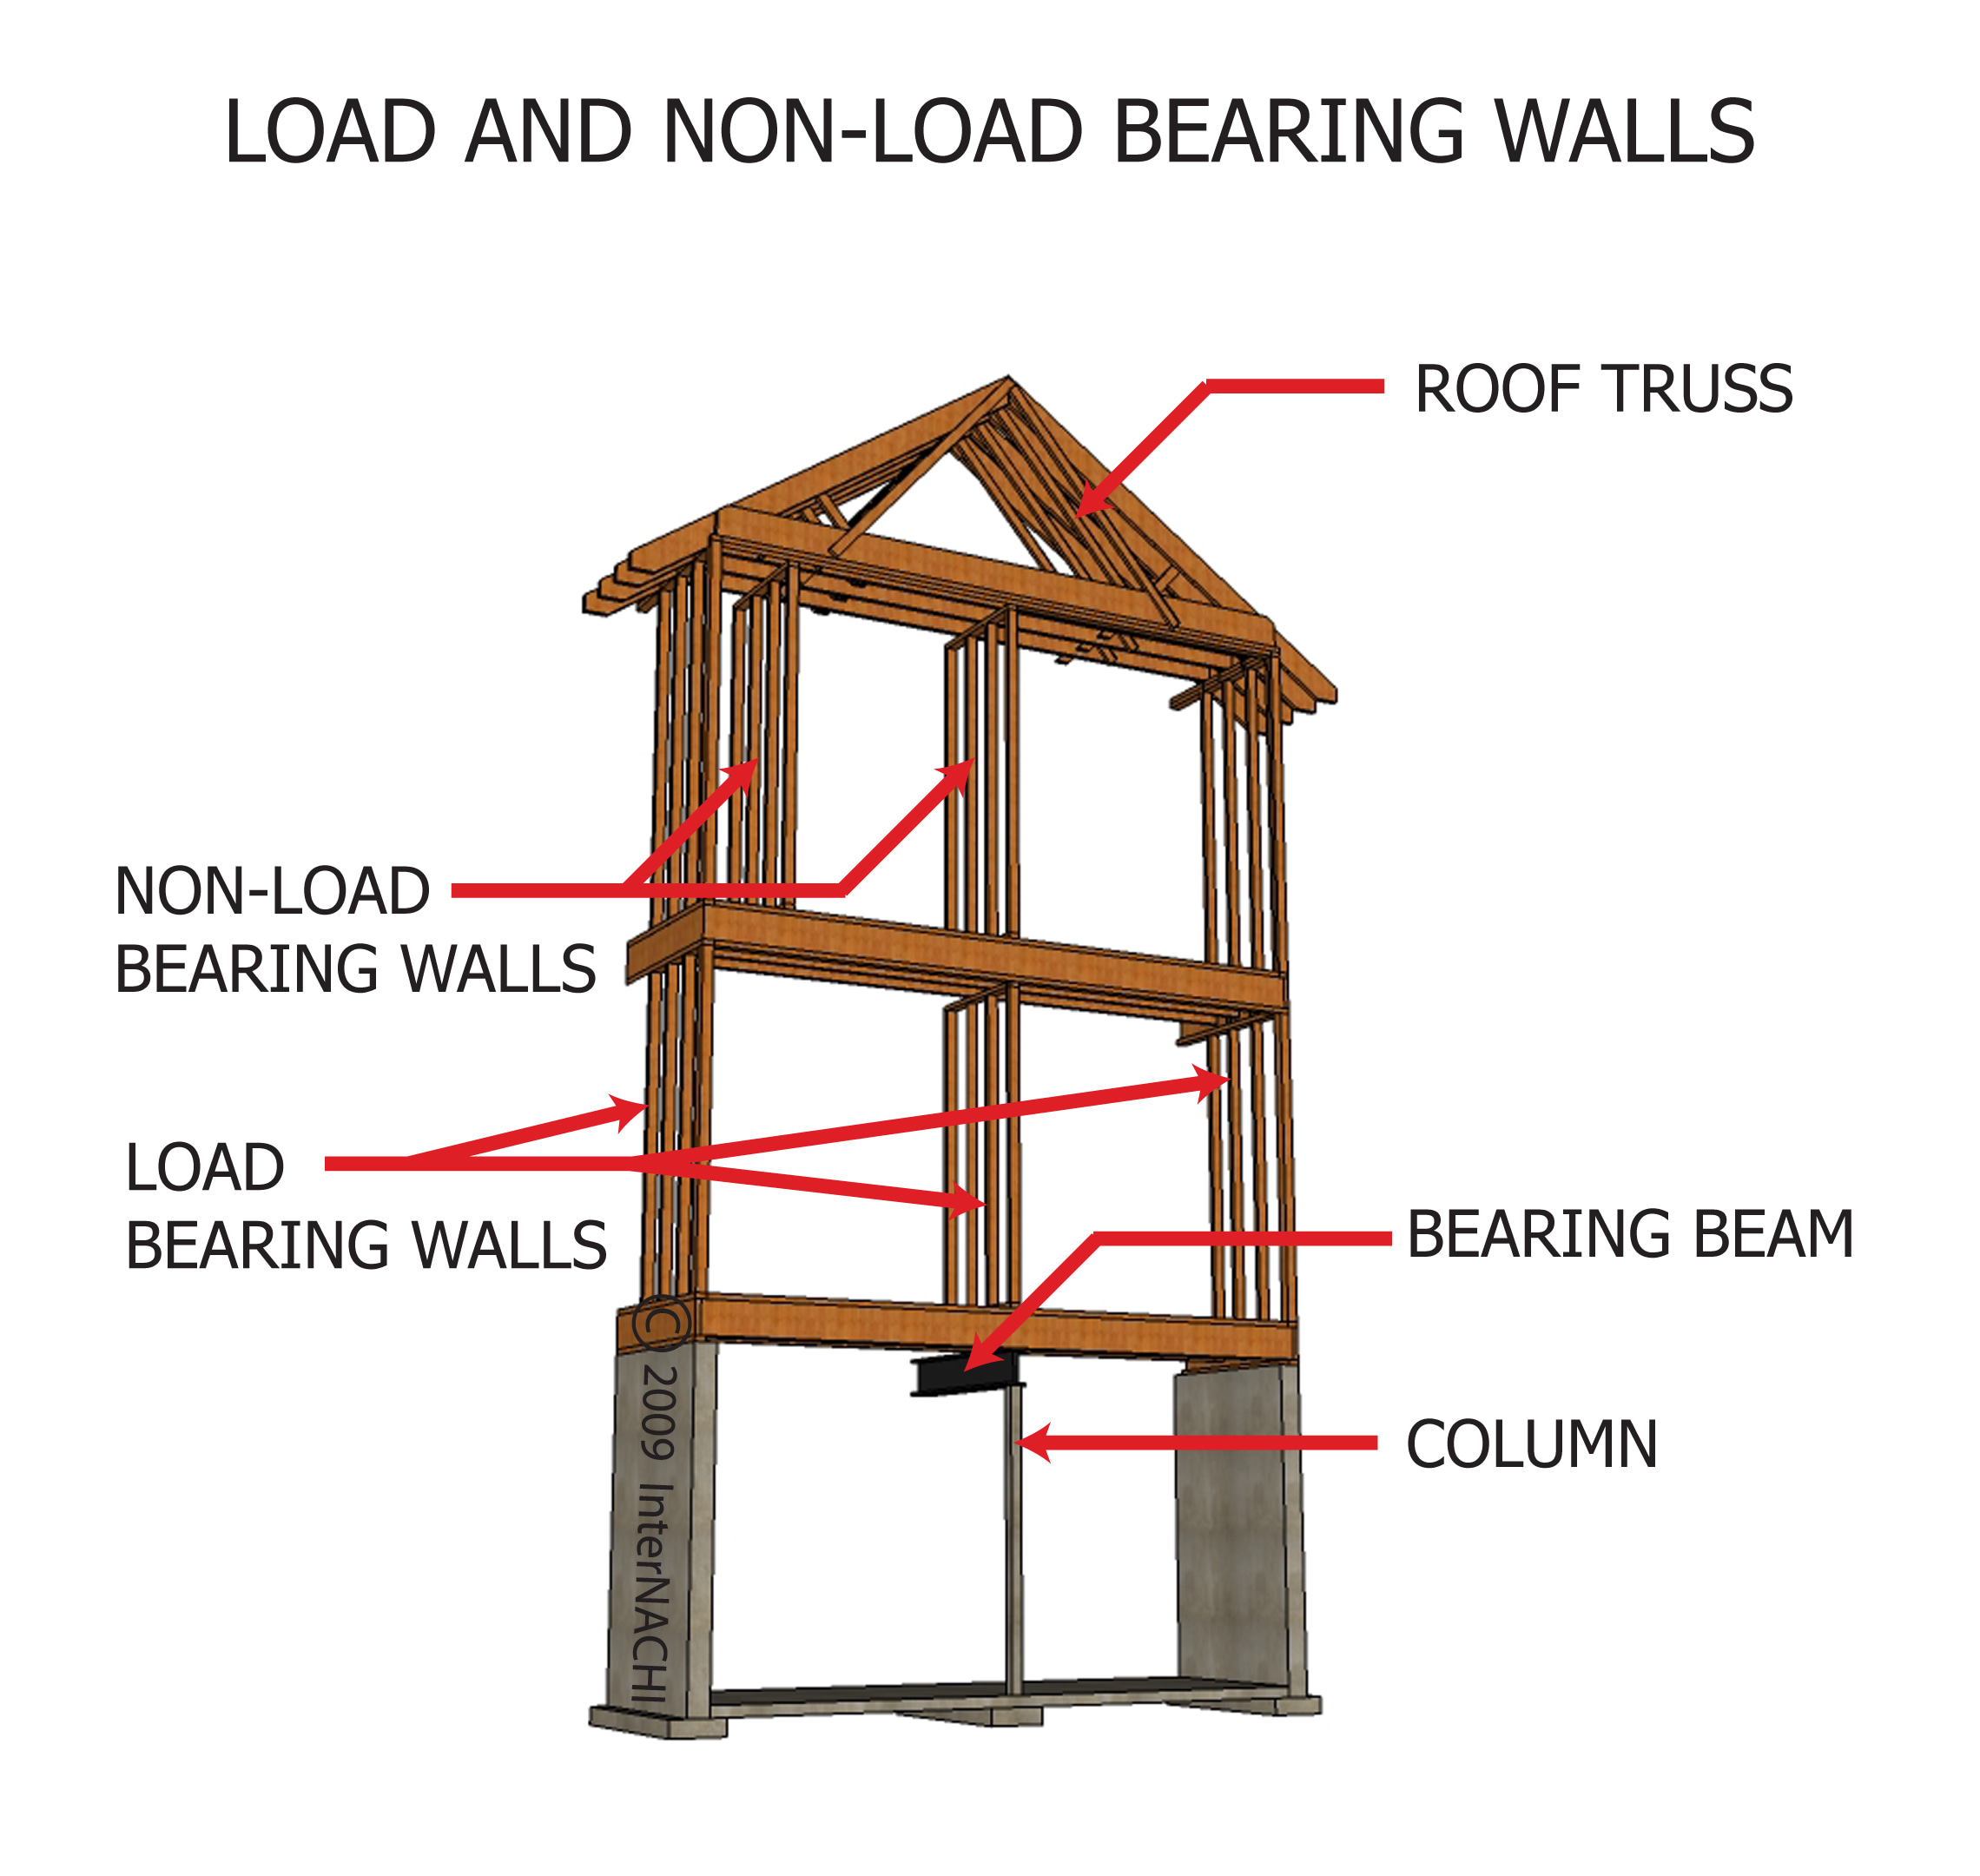 Load and non-load bearing walls.